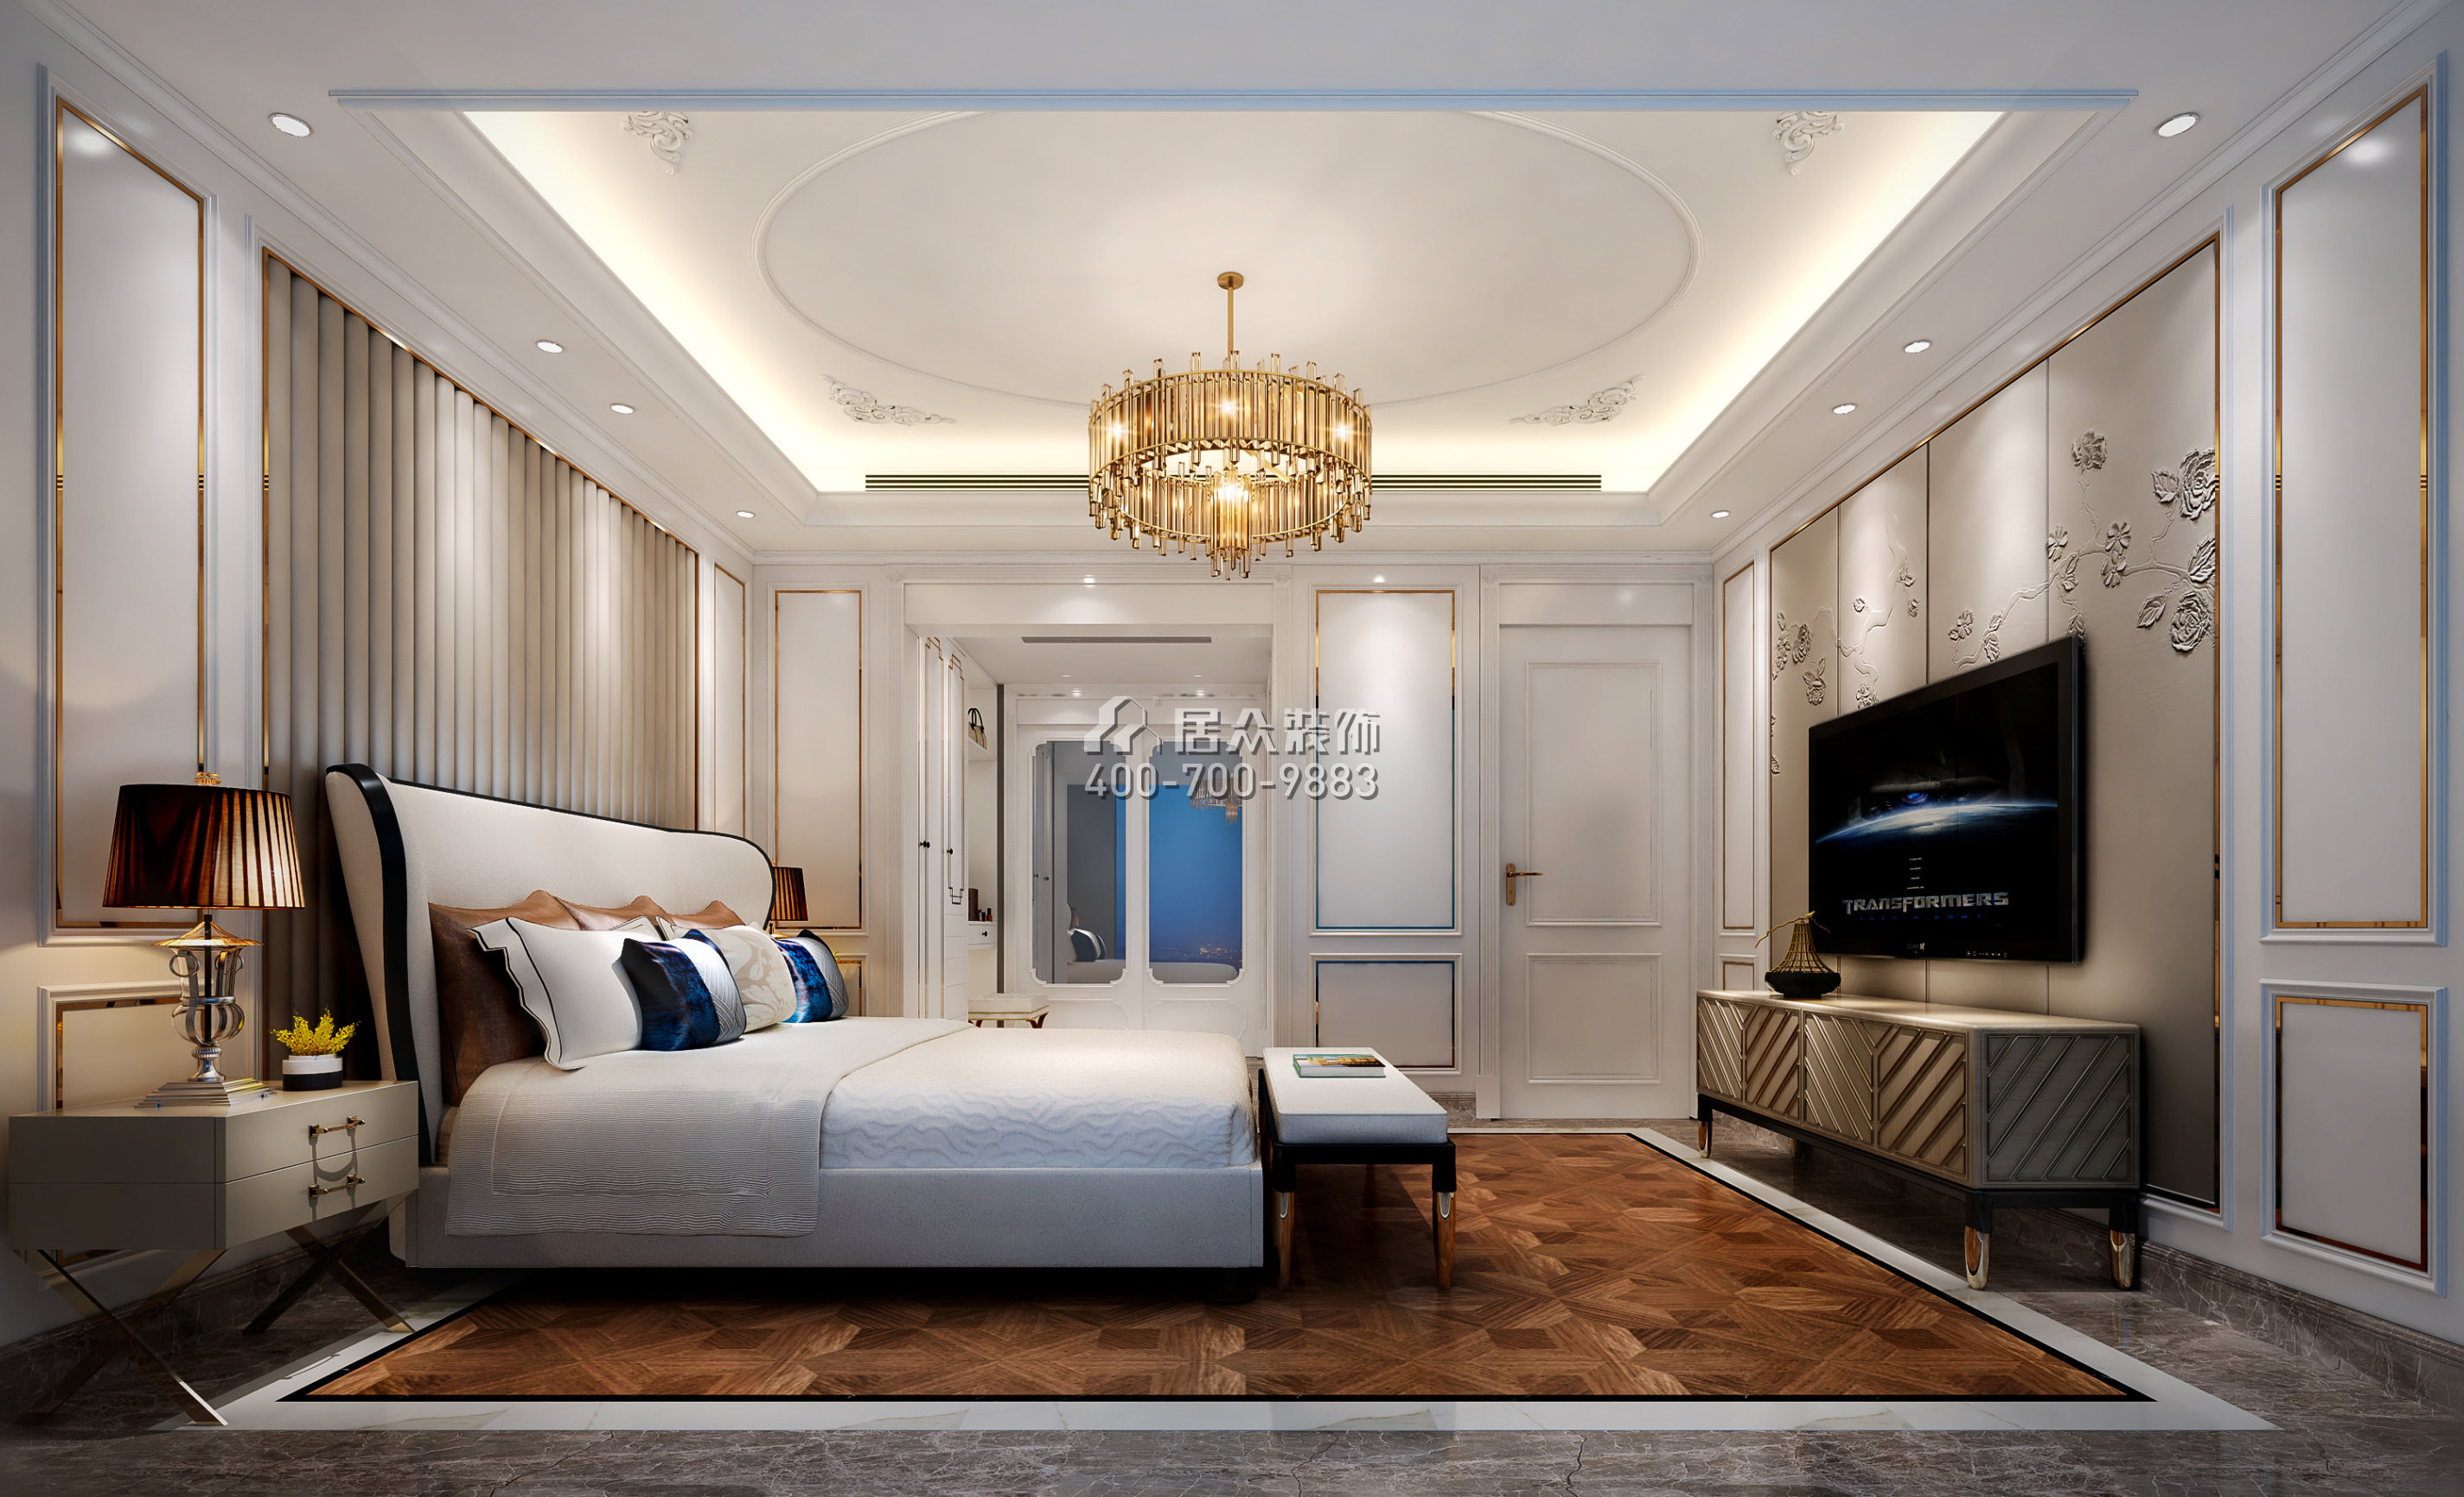 曦湾天馥210平方米欧式风格平层户型卧室装修效果图